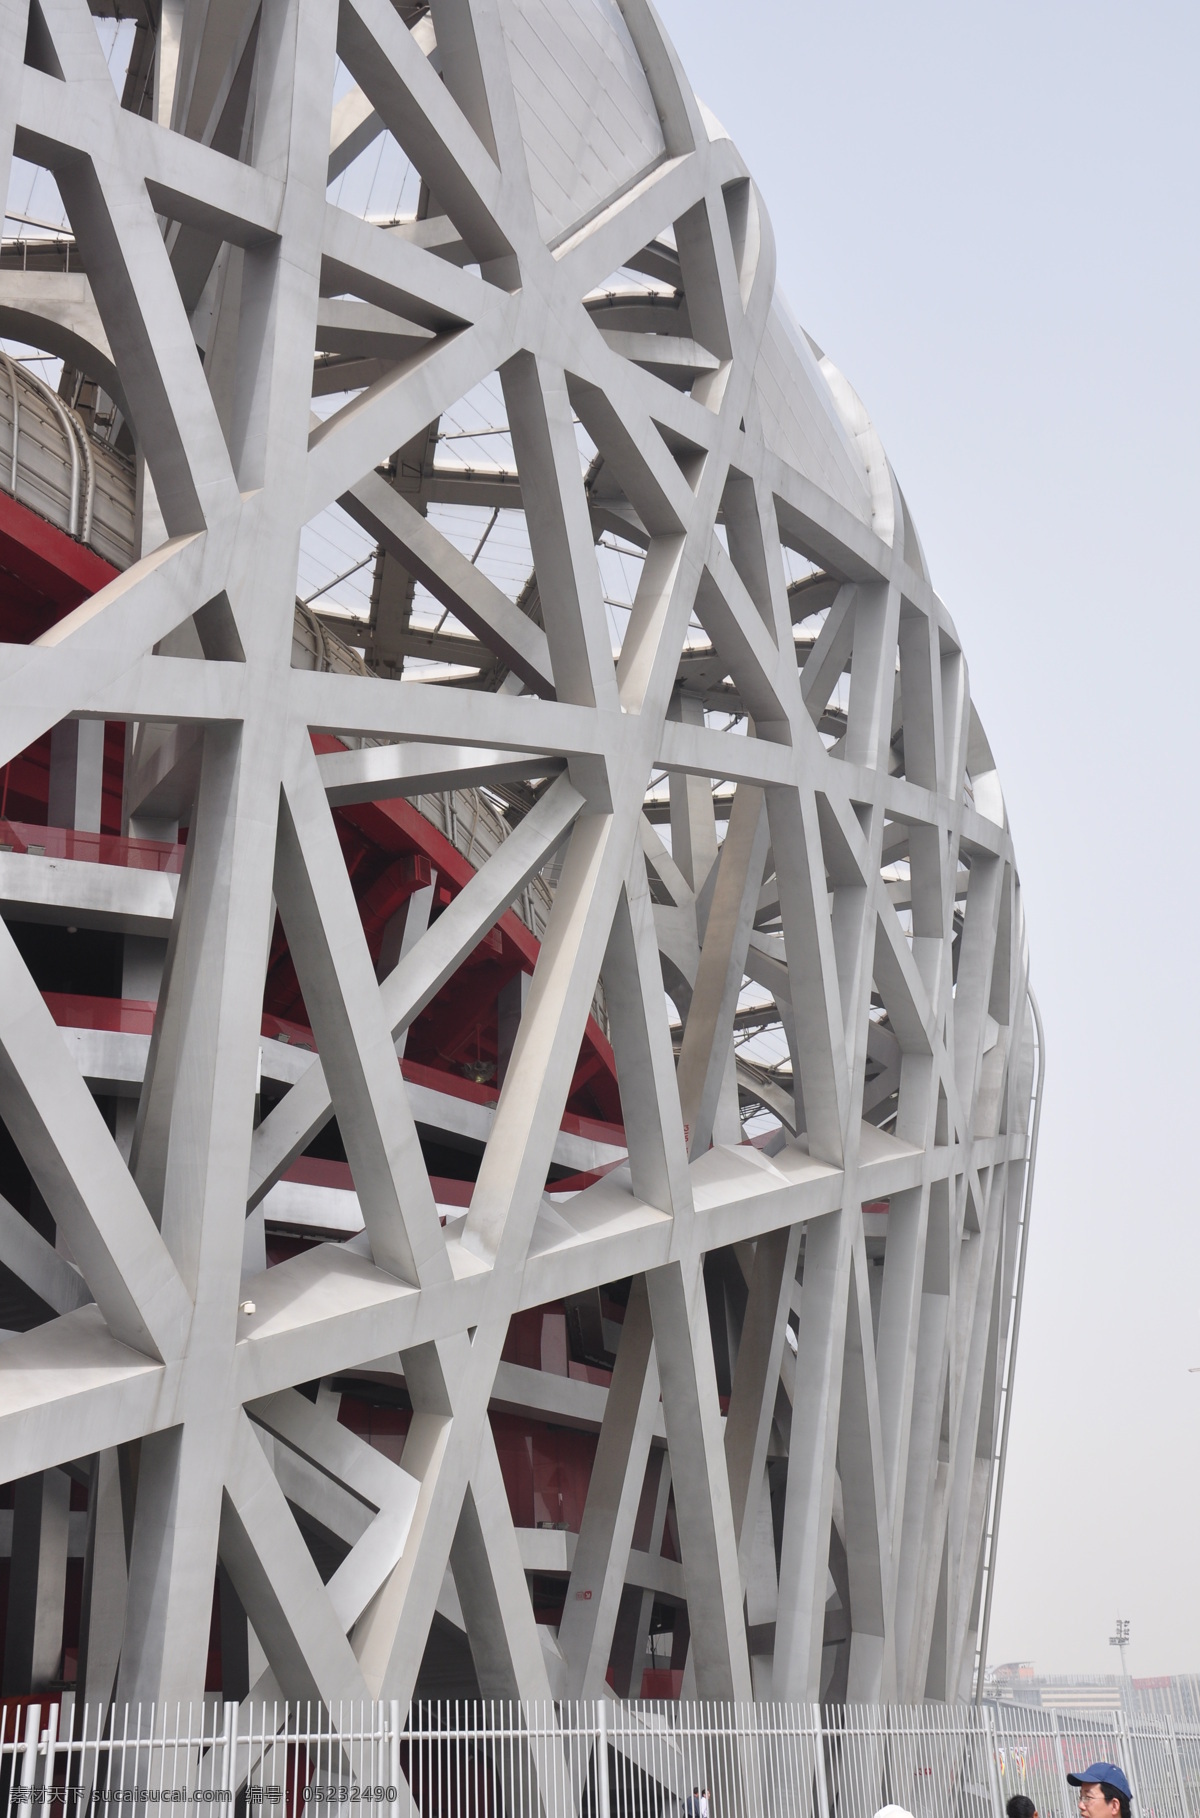 脊梁 北京 建筑 鸟巢 钢架 骨架 体育馆 钢结构 建筑摄影 建筑园林